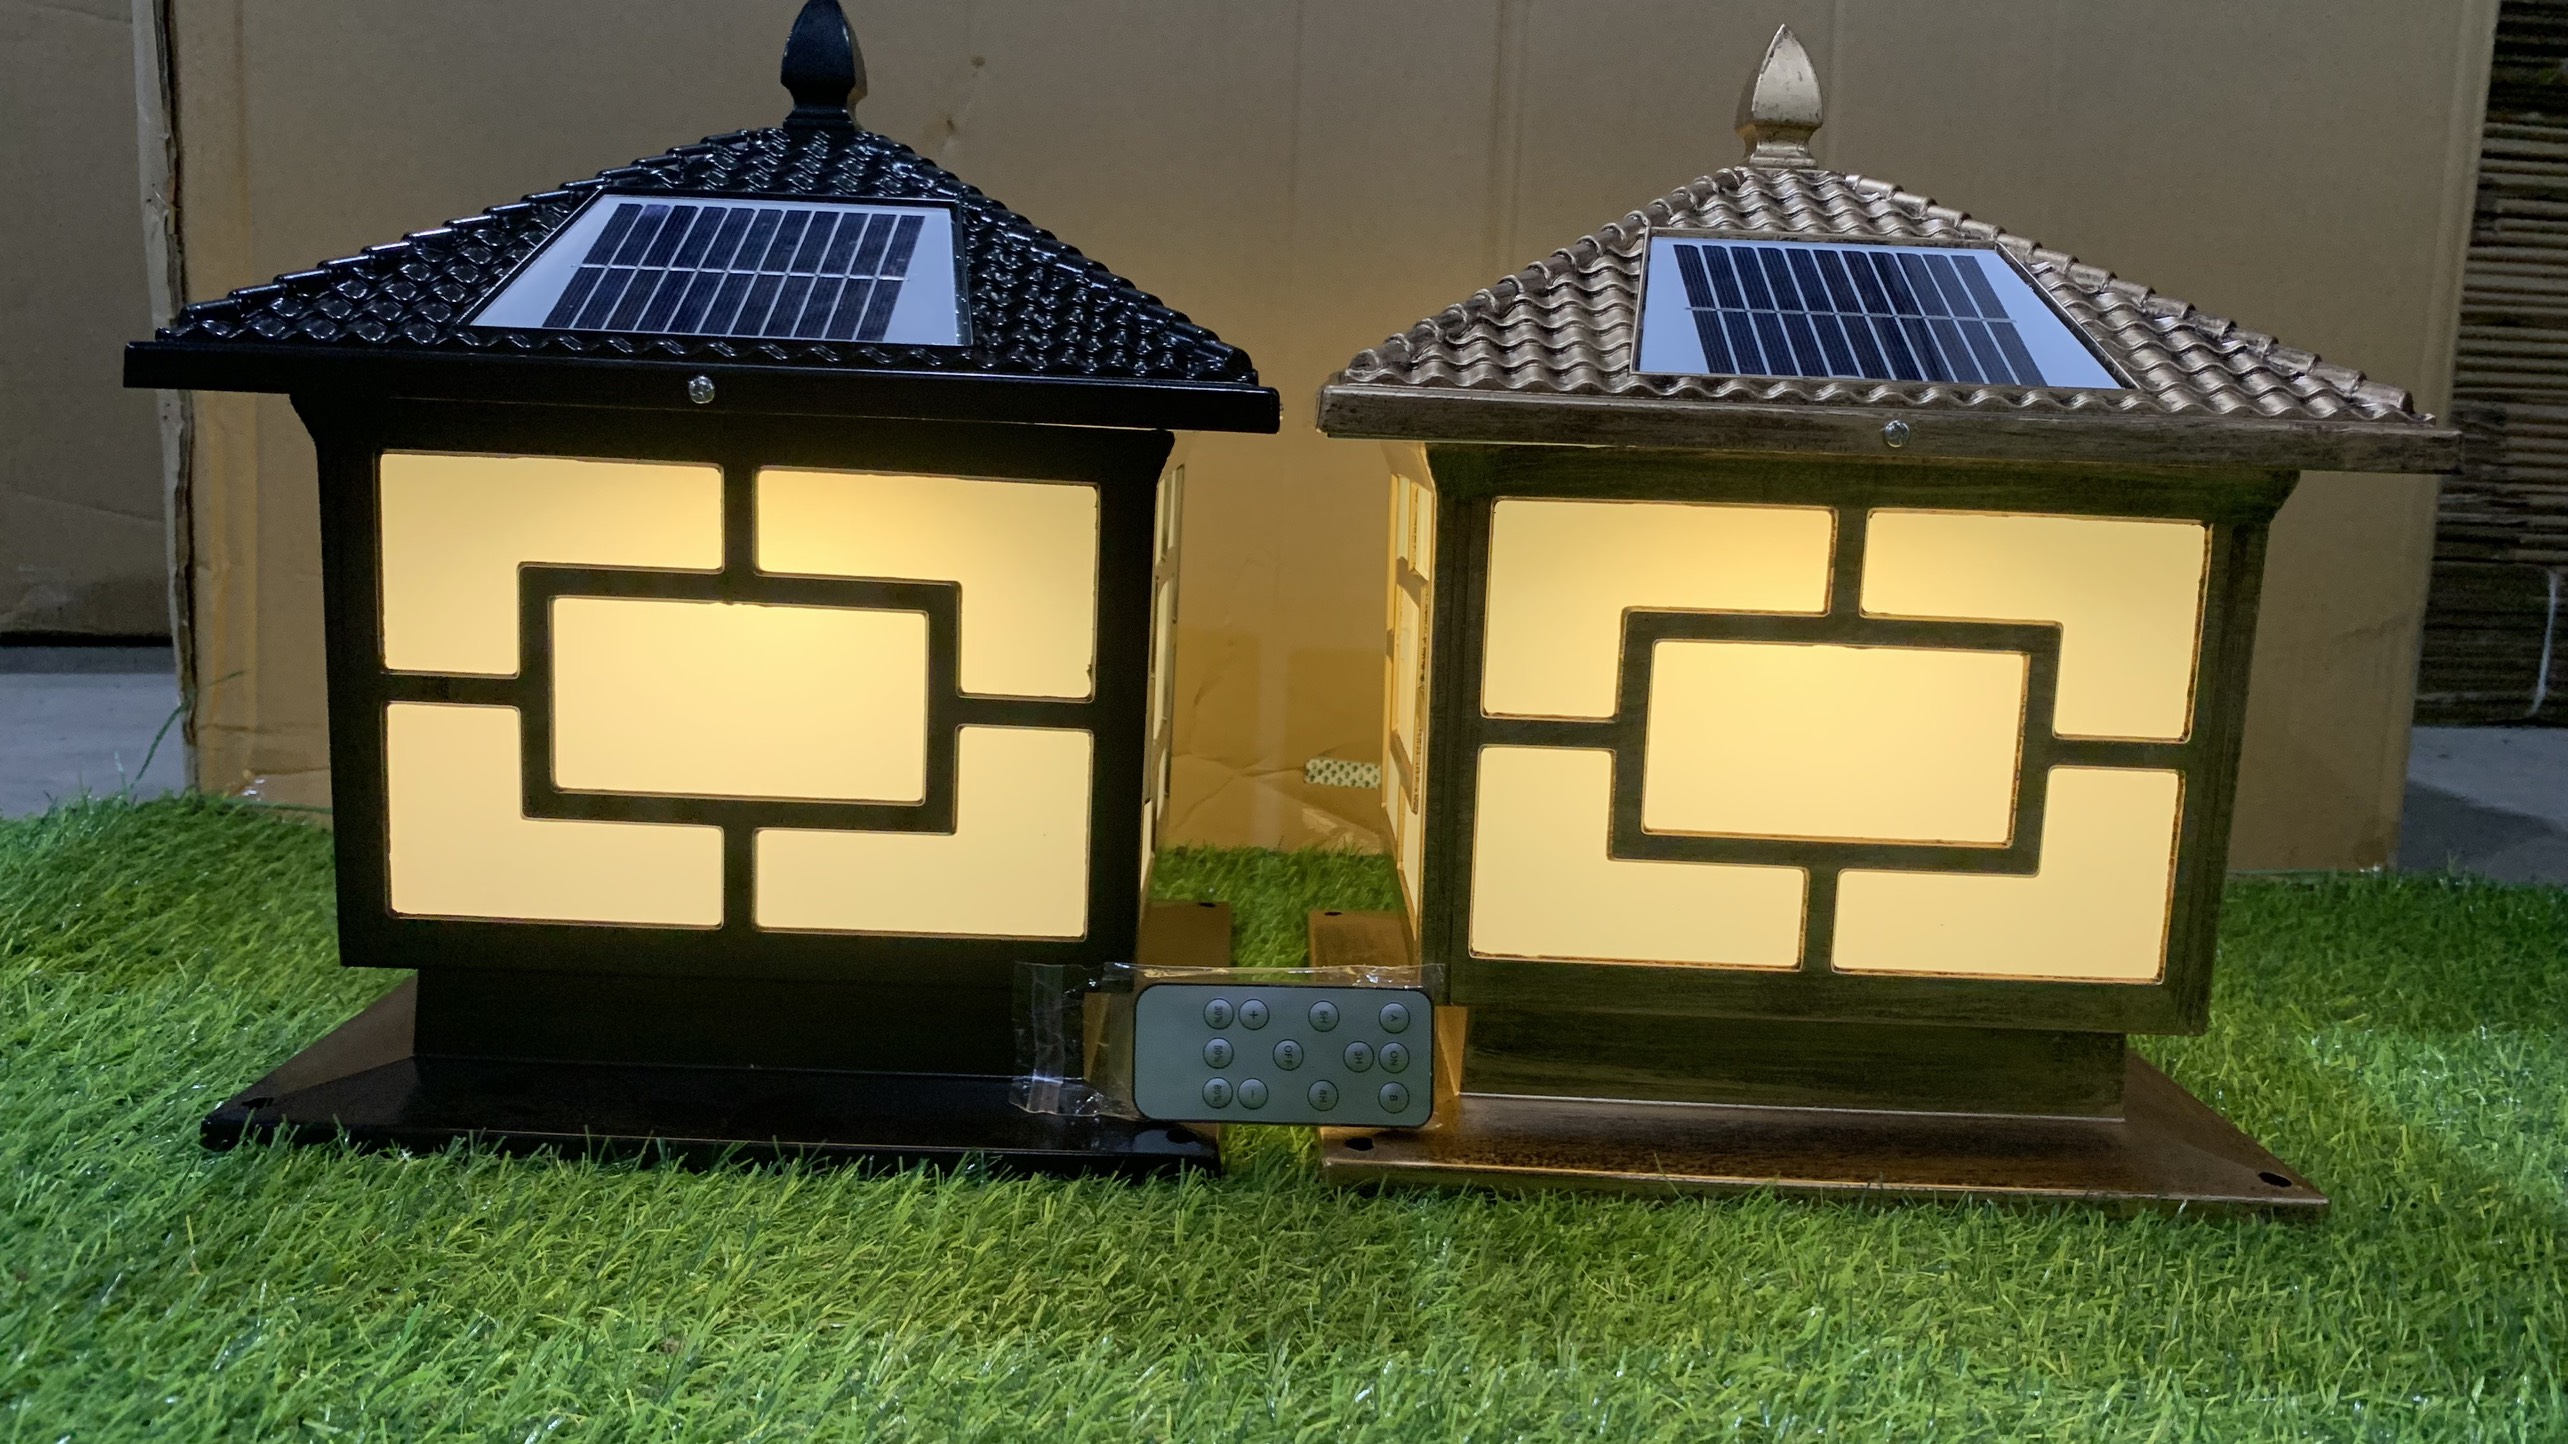 Đèn trụ cổng năng lượng mặt trời đèn trang trí sân vườn 300mm x  300mm, 3 chế độ sáng, IP65,có điều khiển